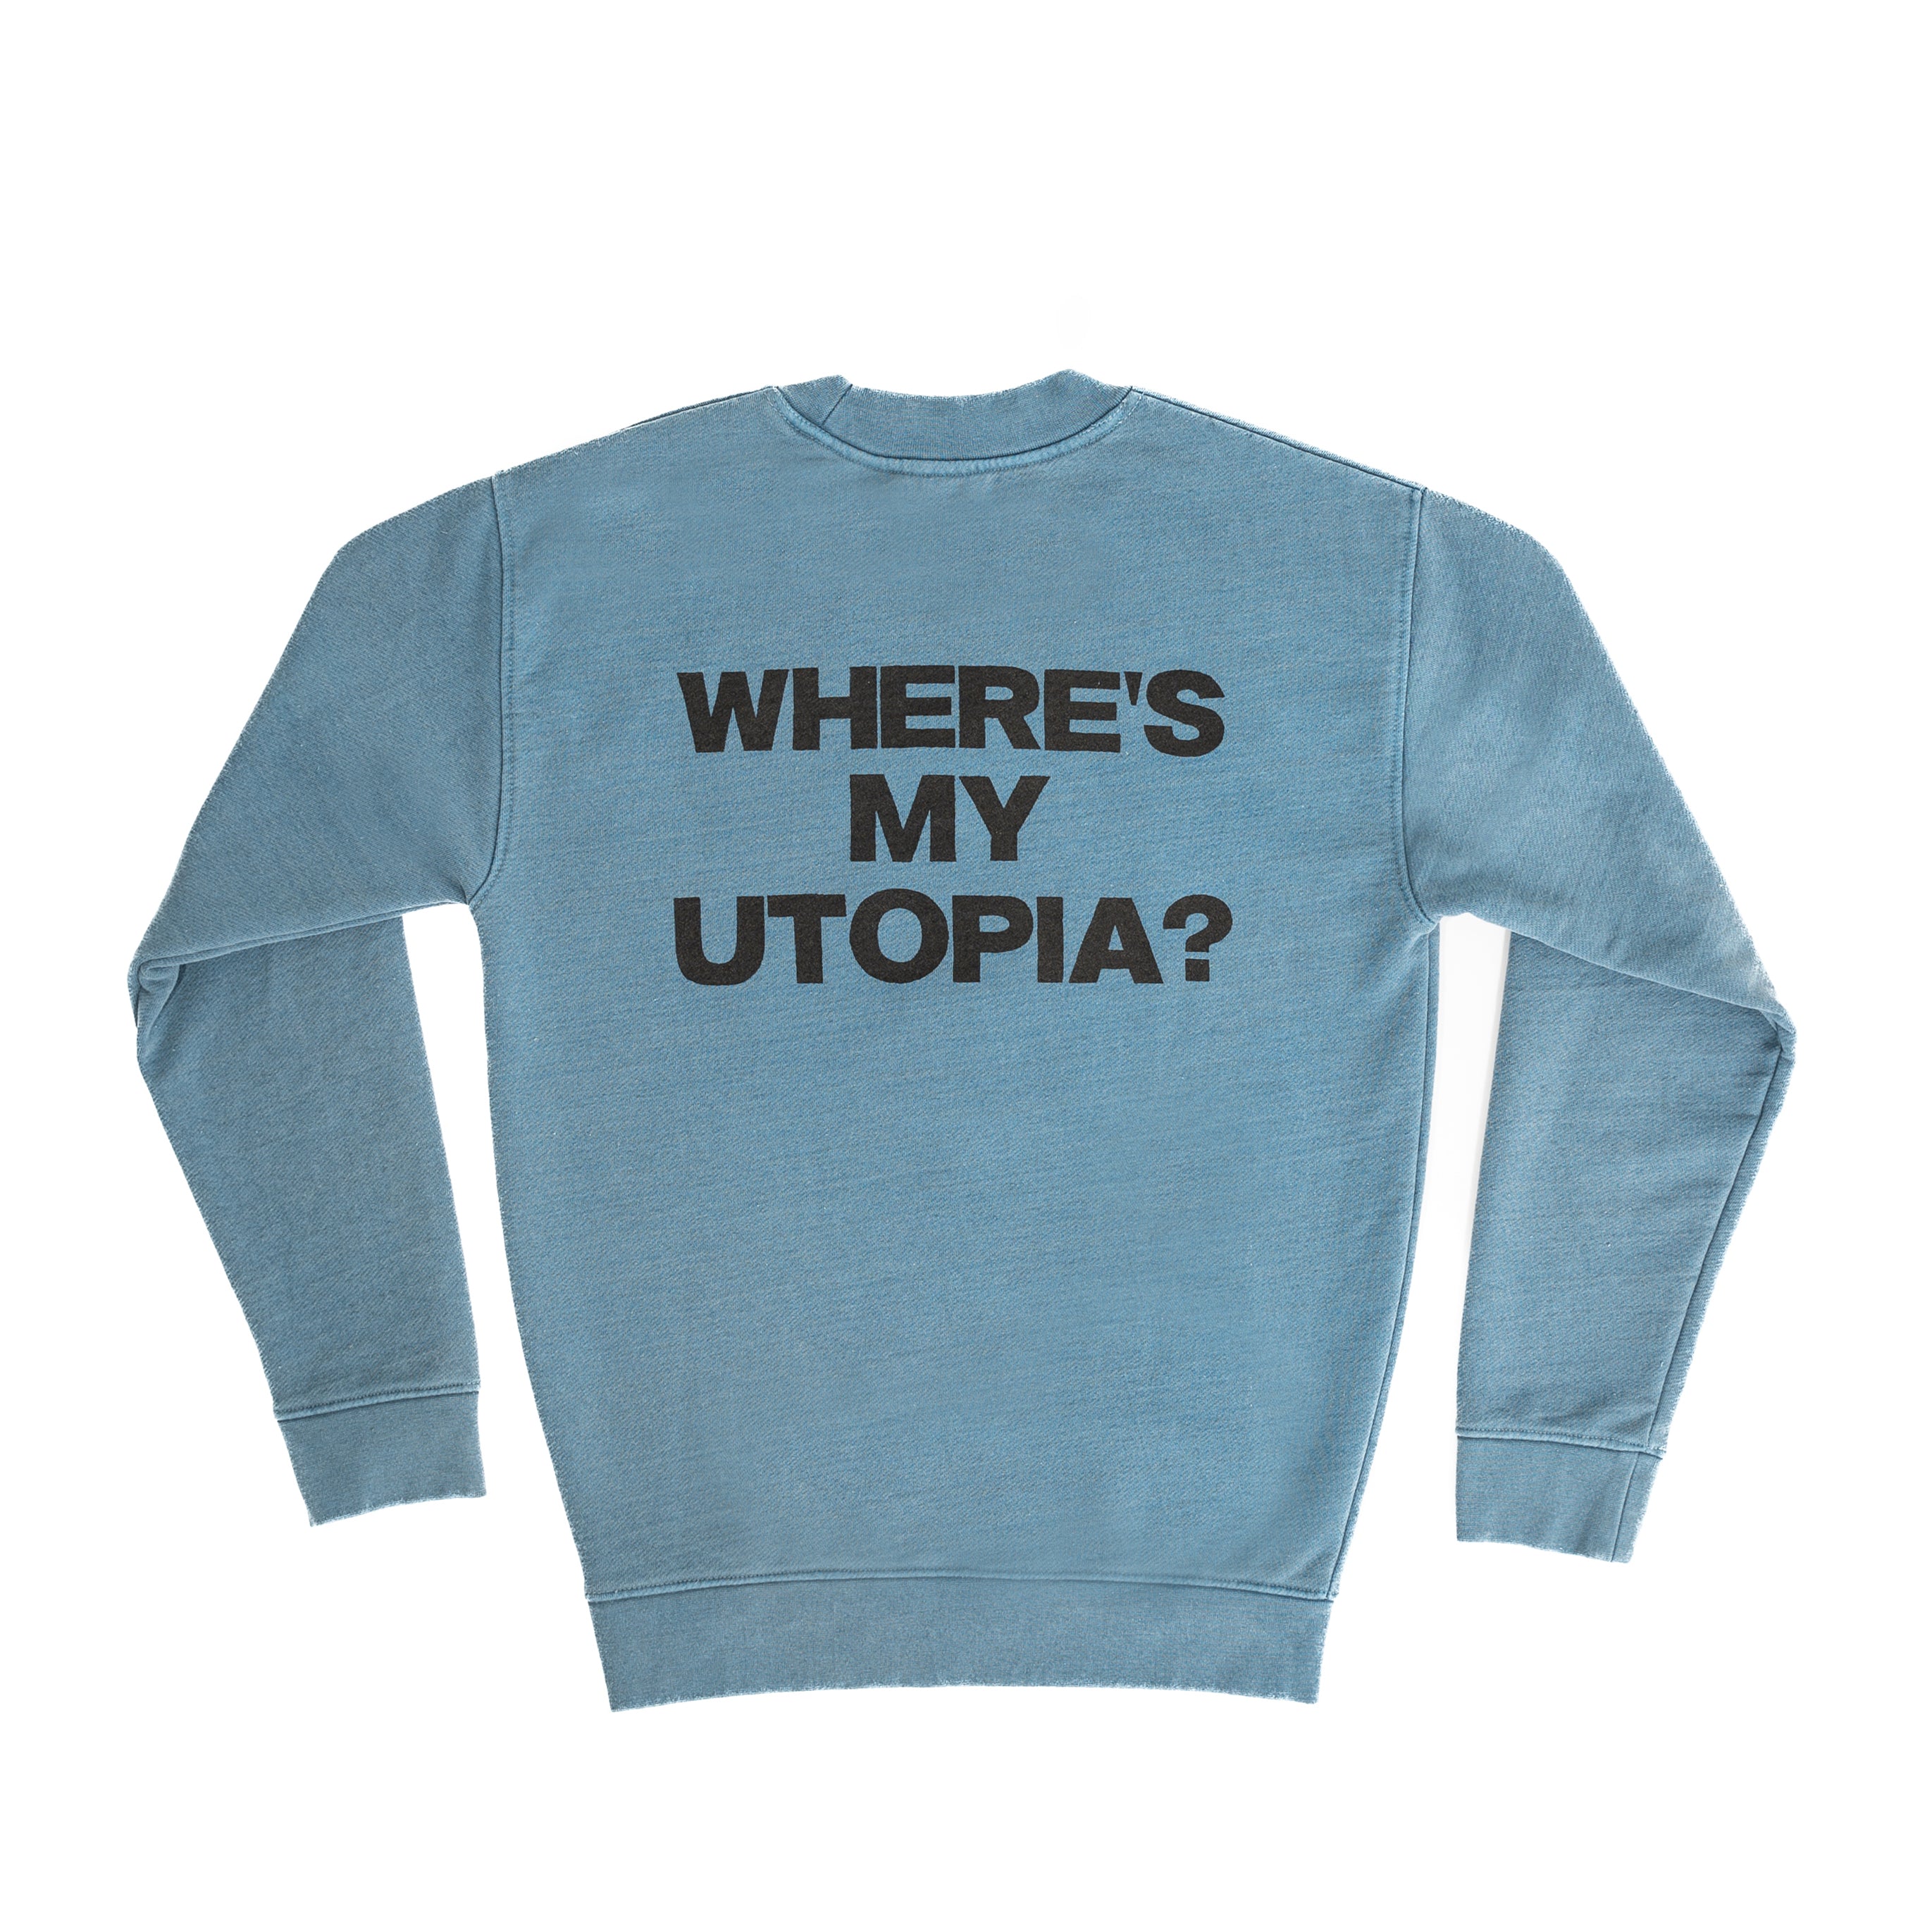 Yard Act - Where’s My Utopia?: Premium Blue Sweater.